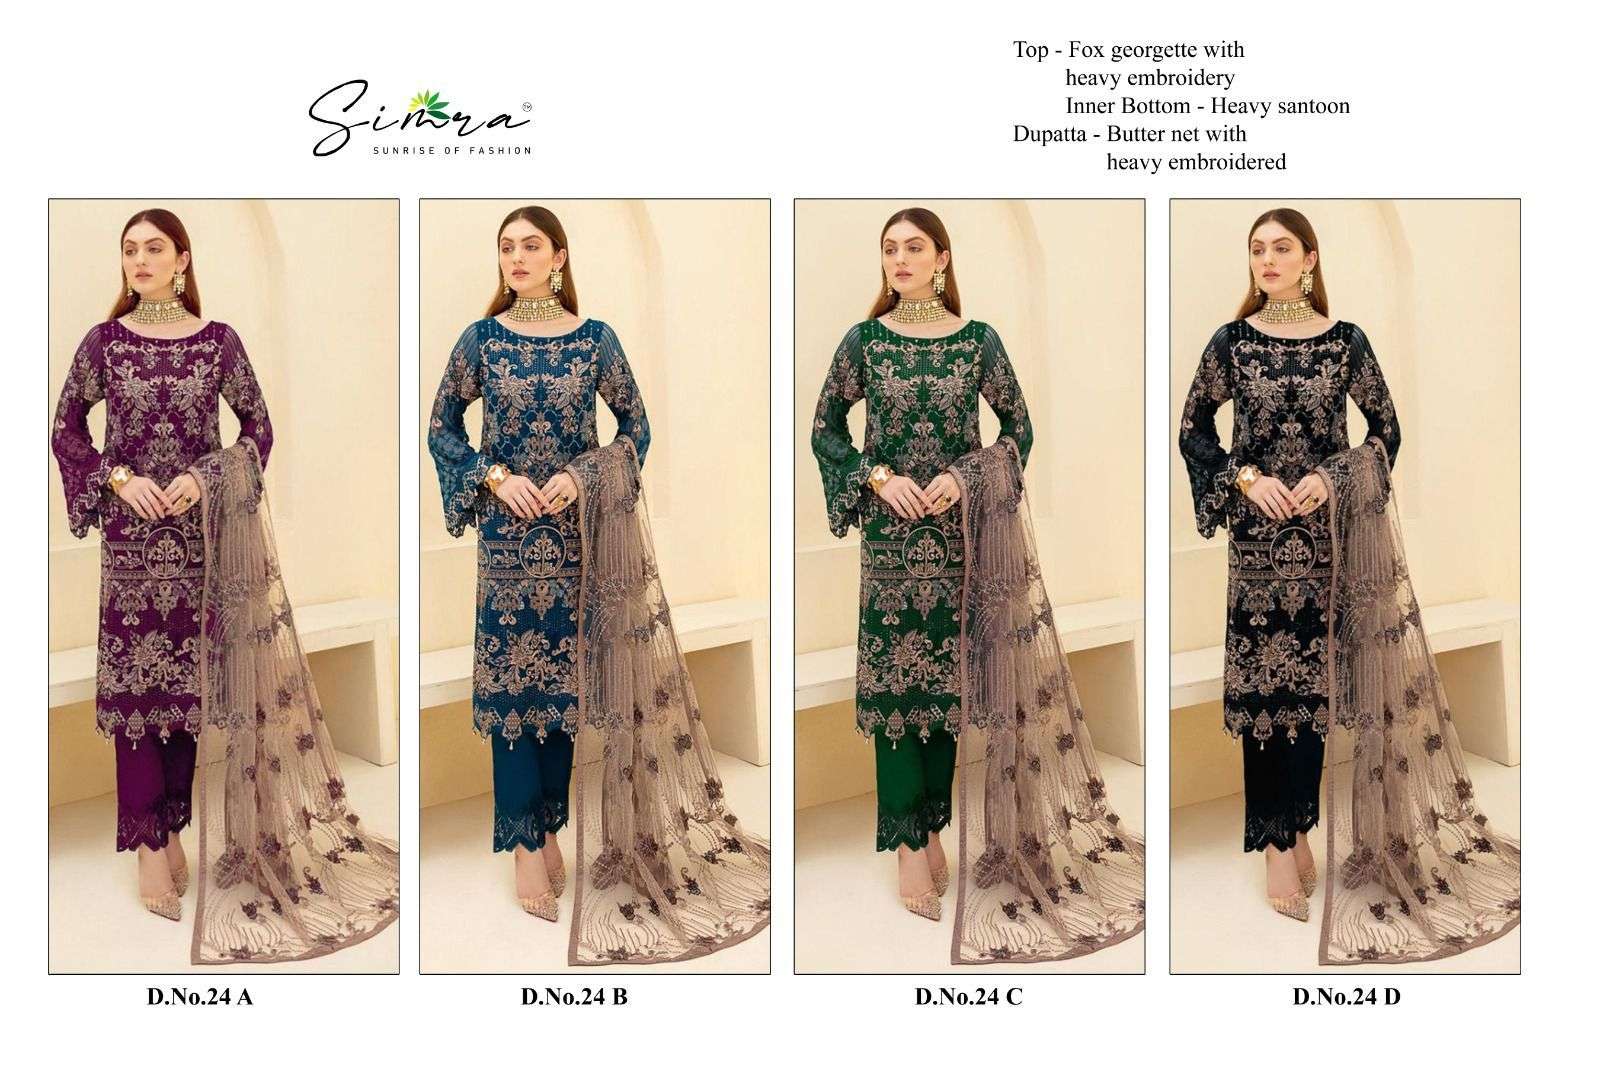 simra 24 colours designer latest georgette pakistani party wear suit wholesale surat india gujarat